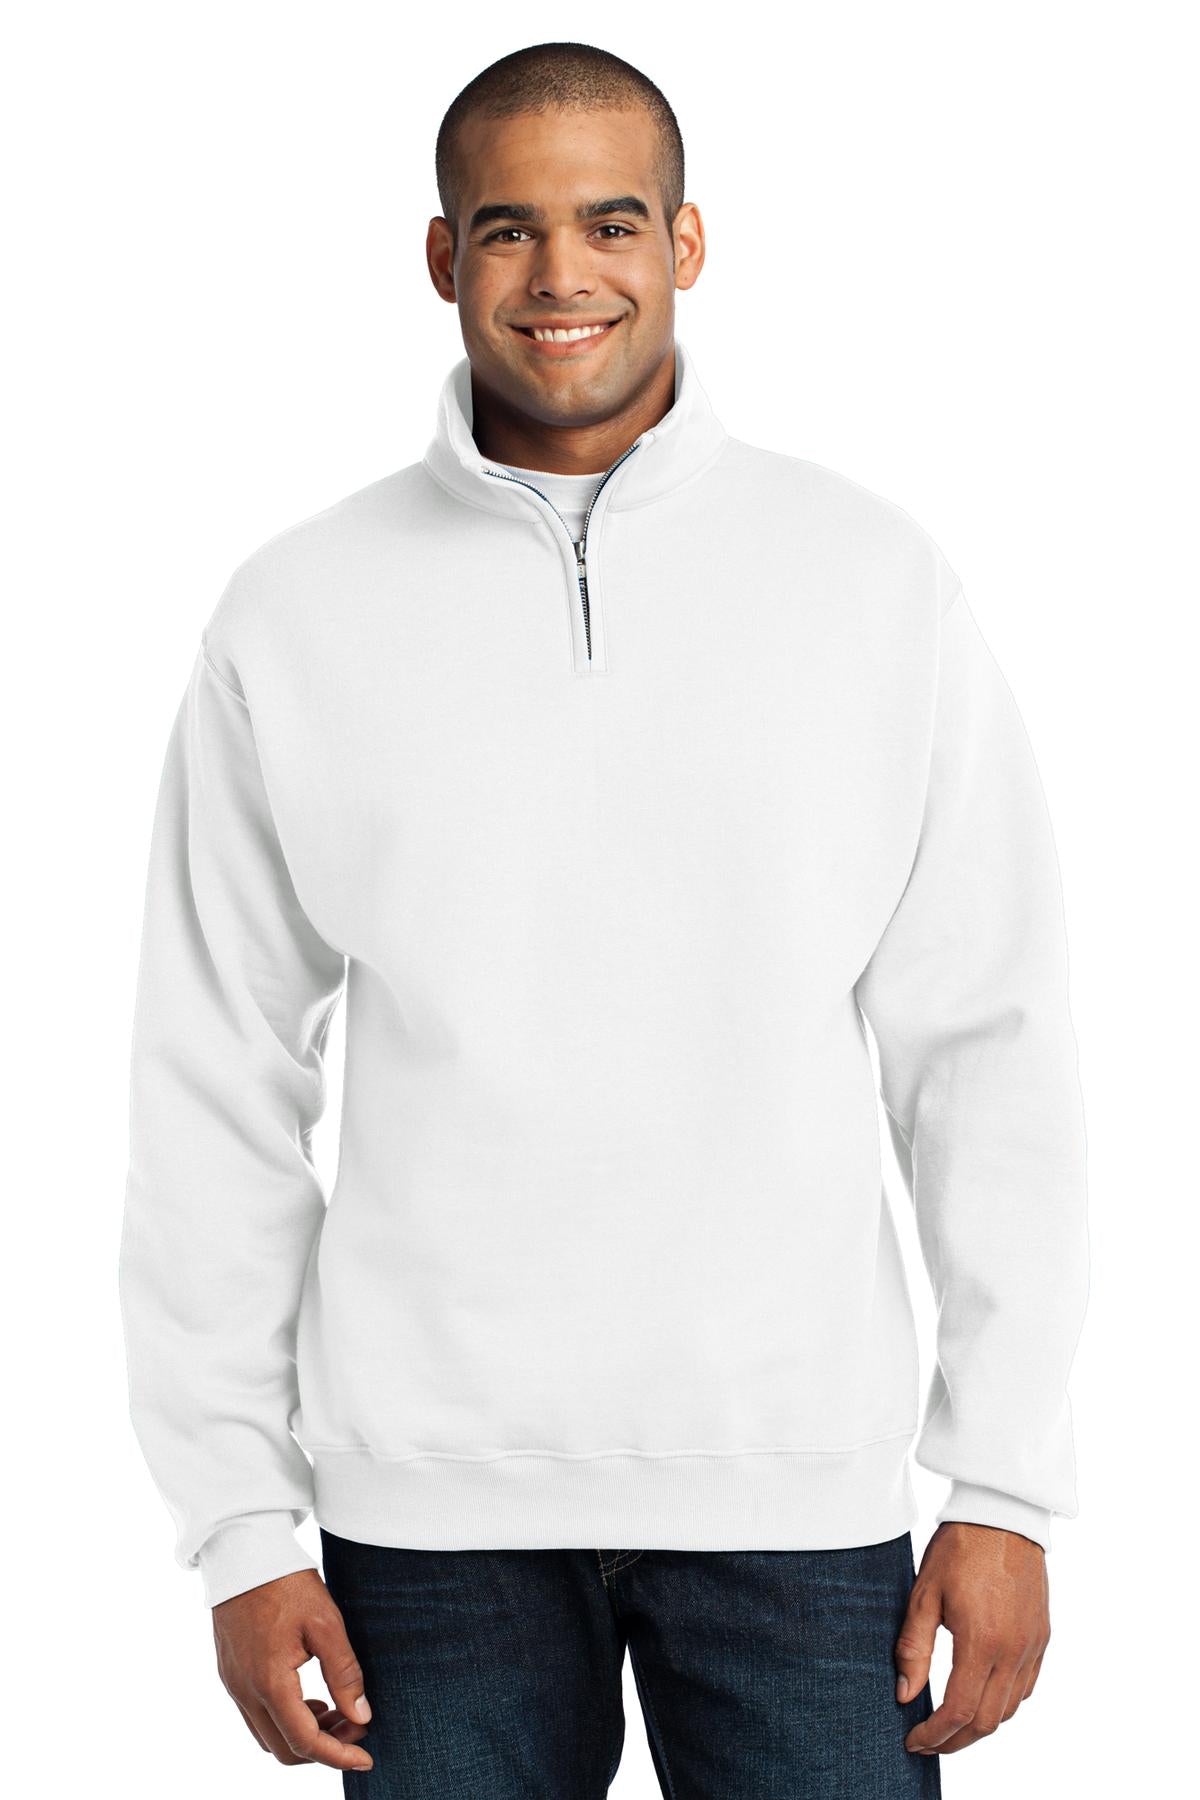 JERZEES® - NuBlend® 1/4-Zip Cadet Collar Sweatshirt. 995M - DFW Impression